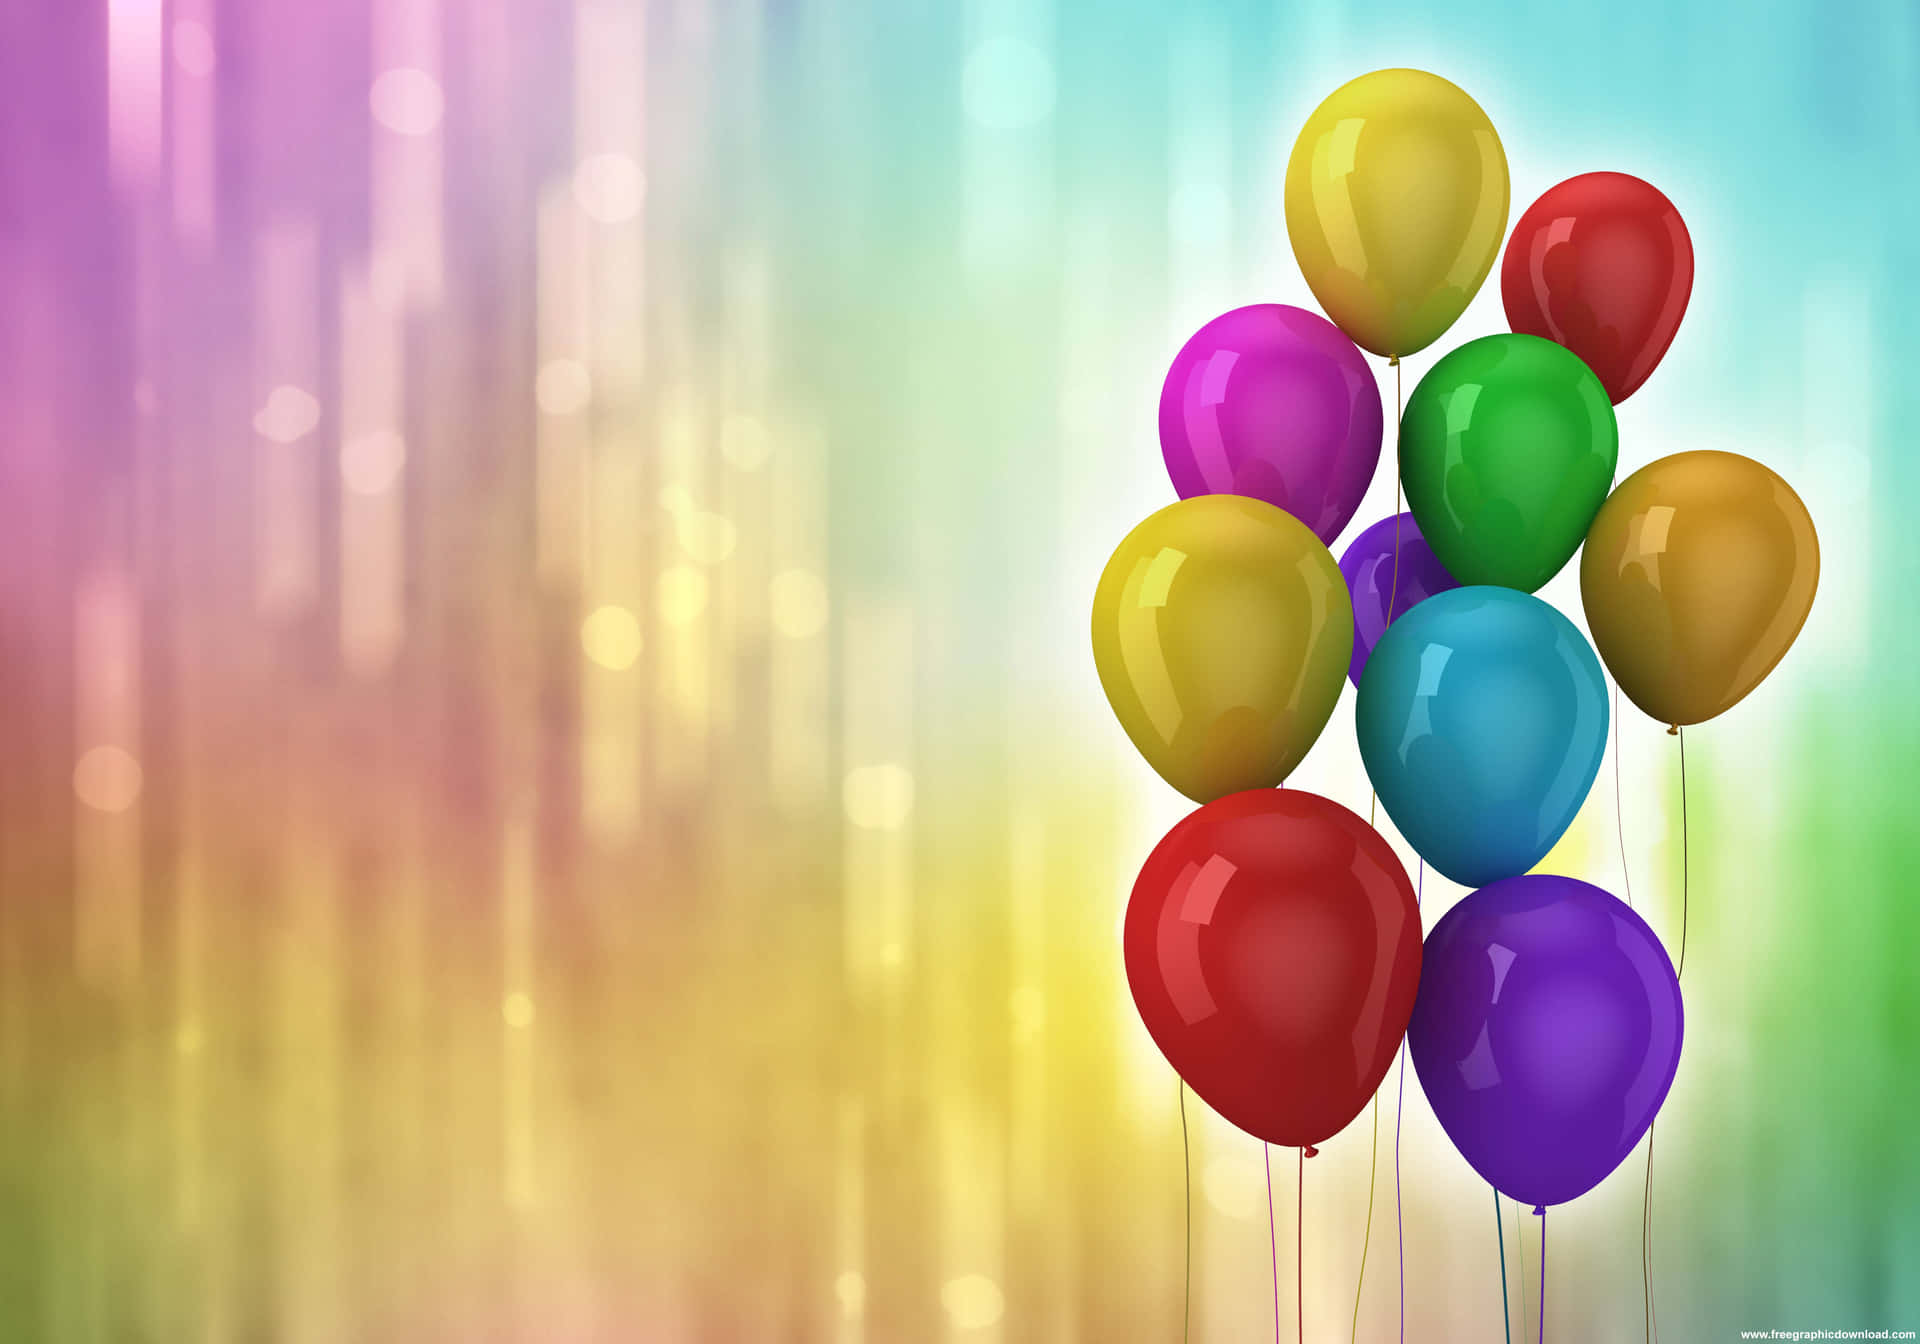 Fundode Tela Paisagem De Balões De Aniversário Da Fiesta.